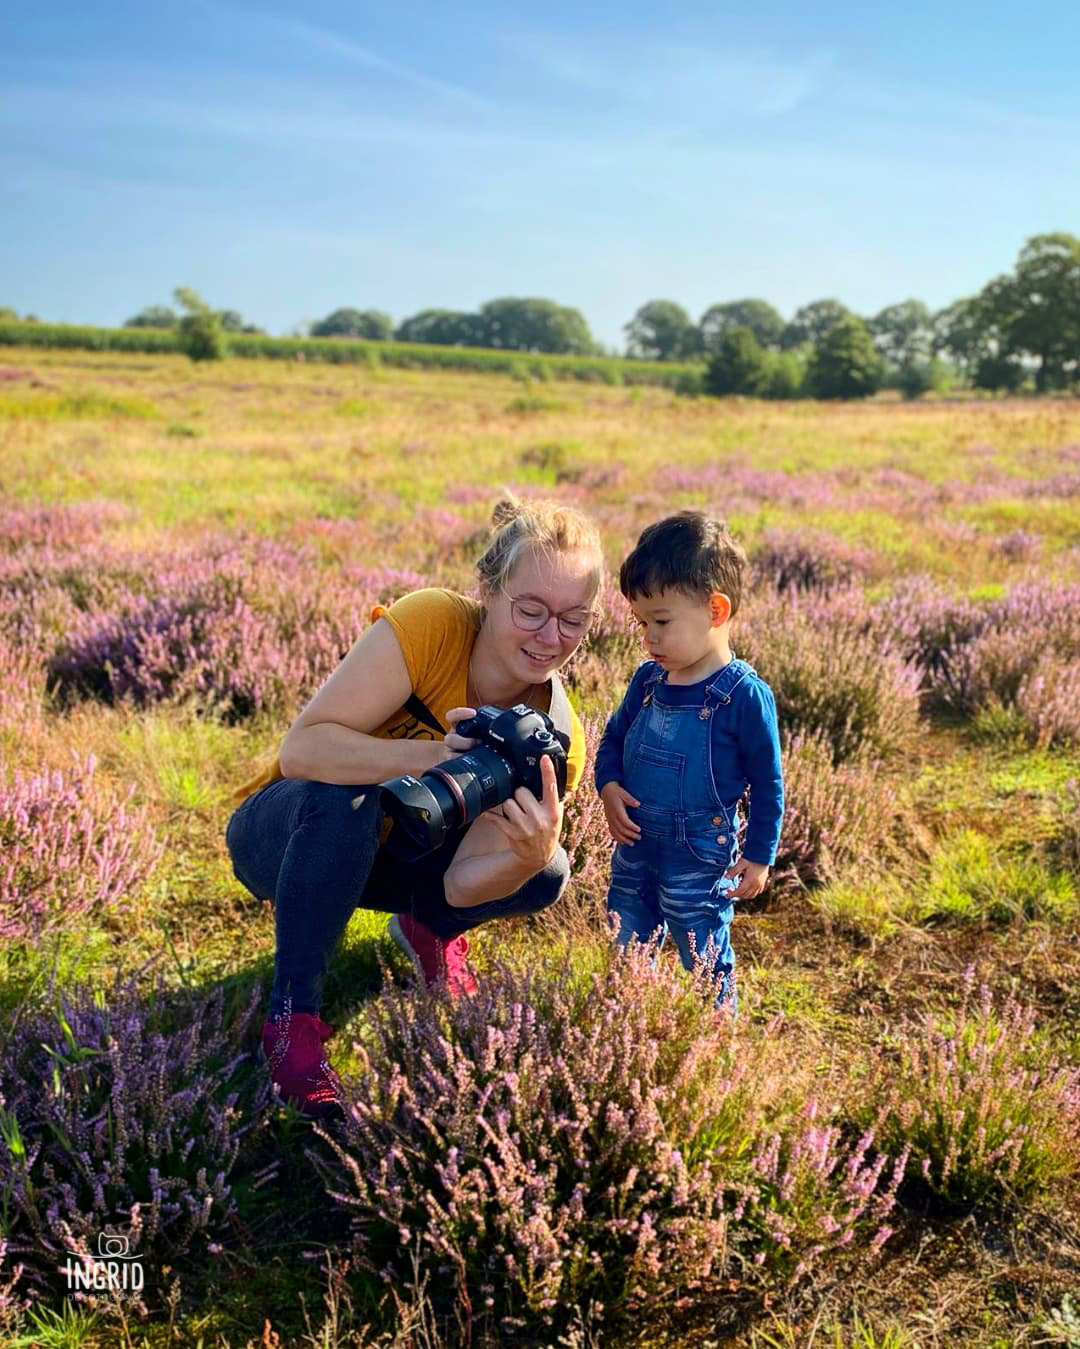 Ingrid de fotograaf laat haar fotos zien aan jongetje tijdens een fotoshoot op de paarse heide